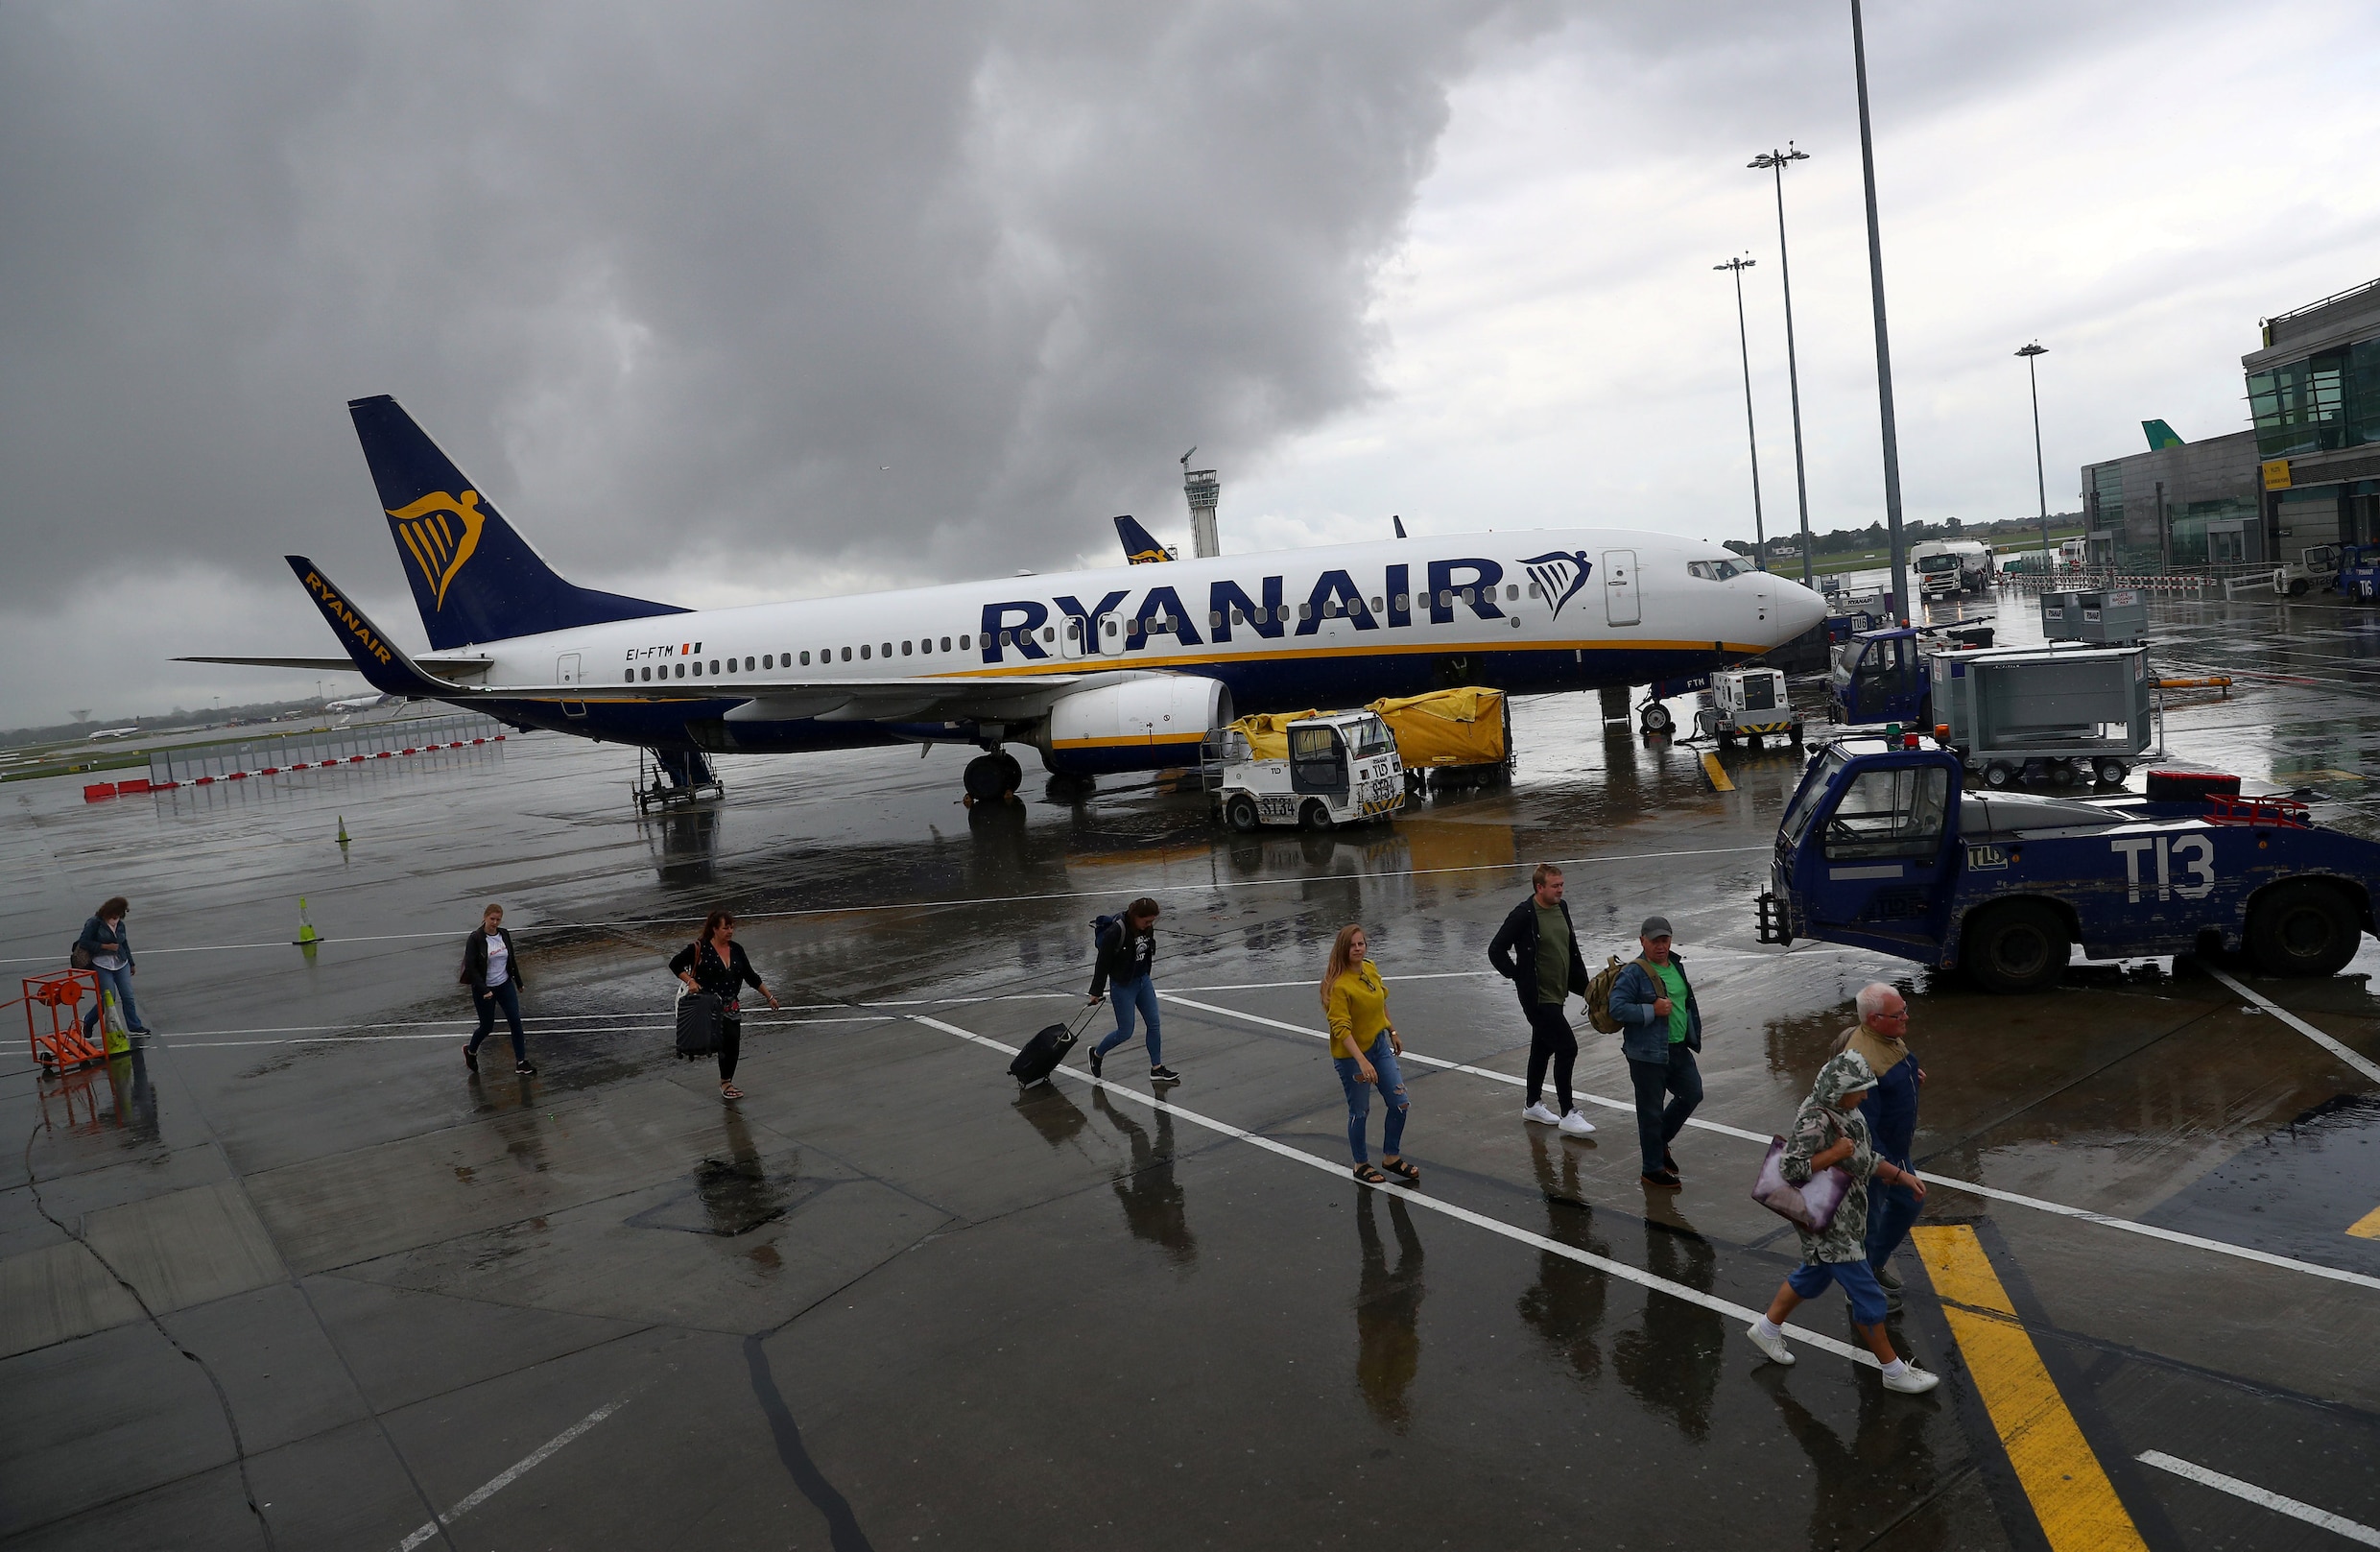 Test-Aankoop start rechtszaken tegen Ryanair om geld van reizigers terug te krijgen